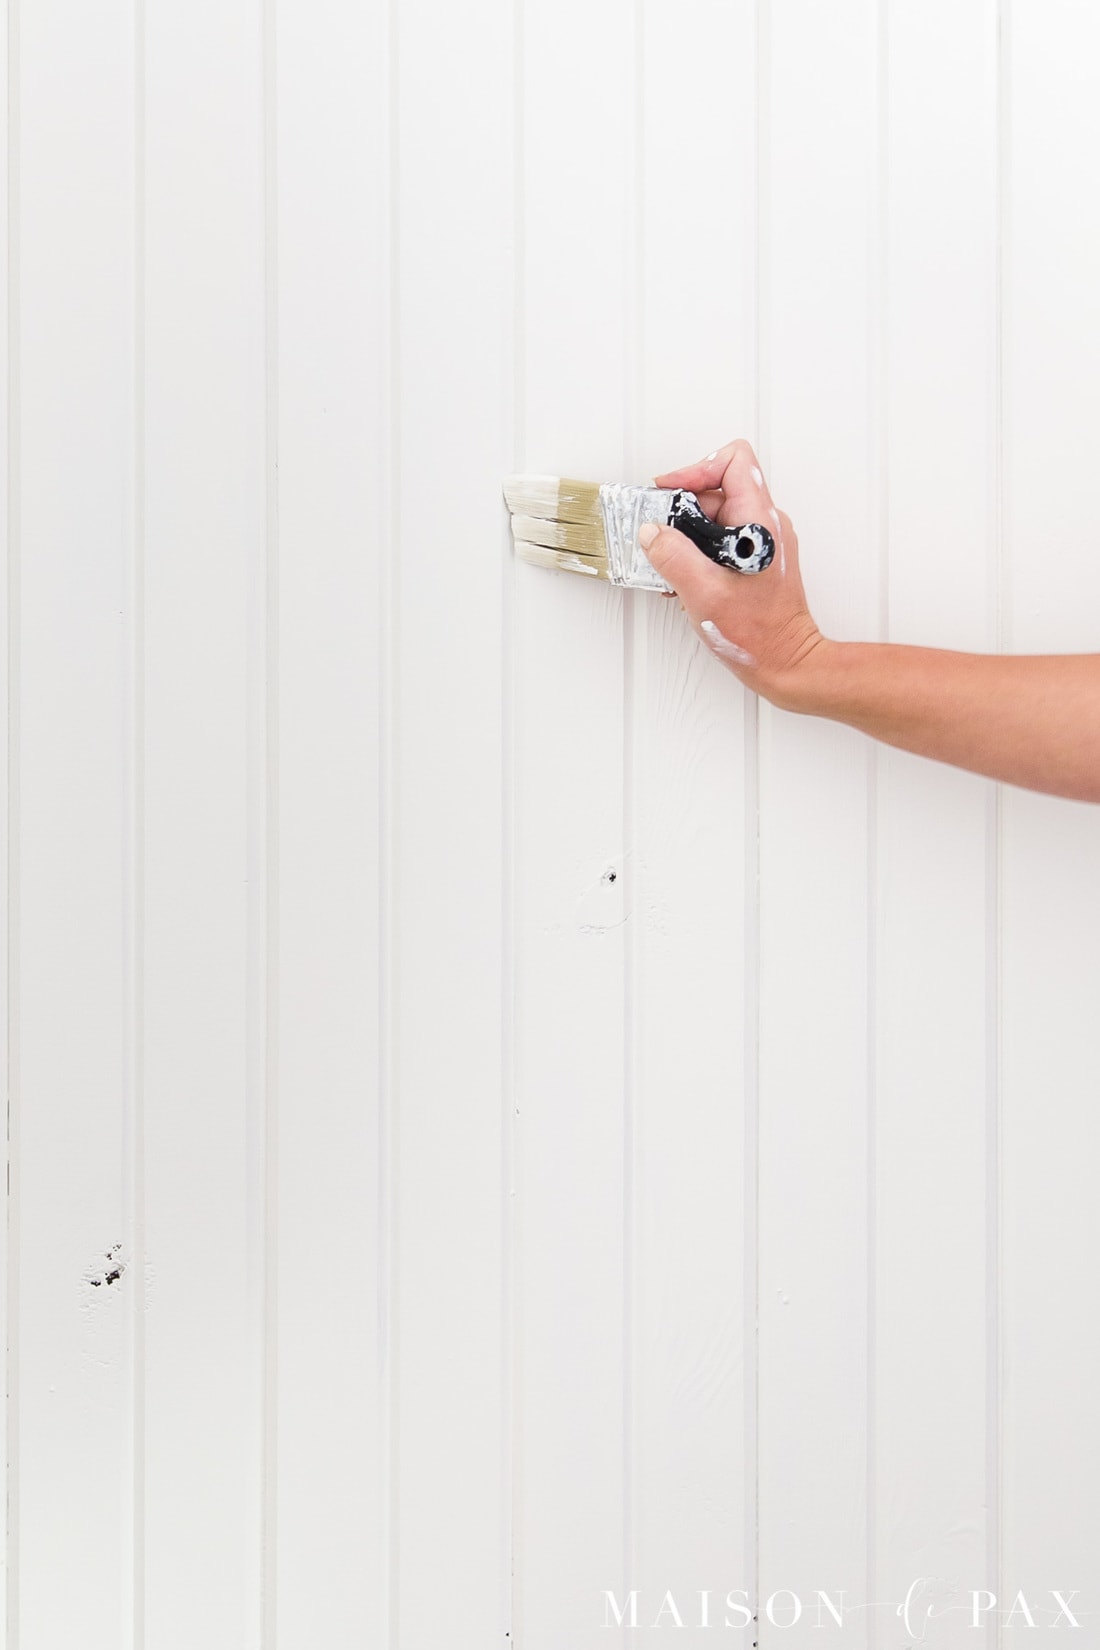 How to Paint Wood Paneling - Maison de Pax